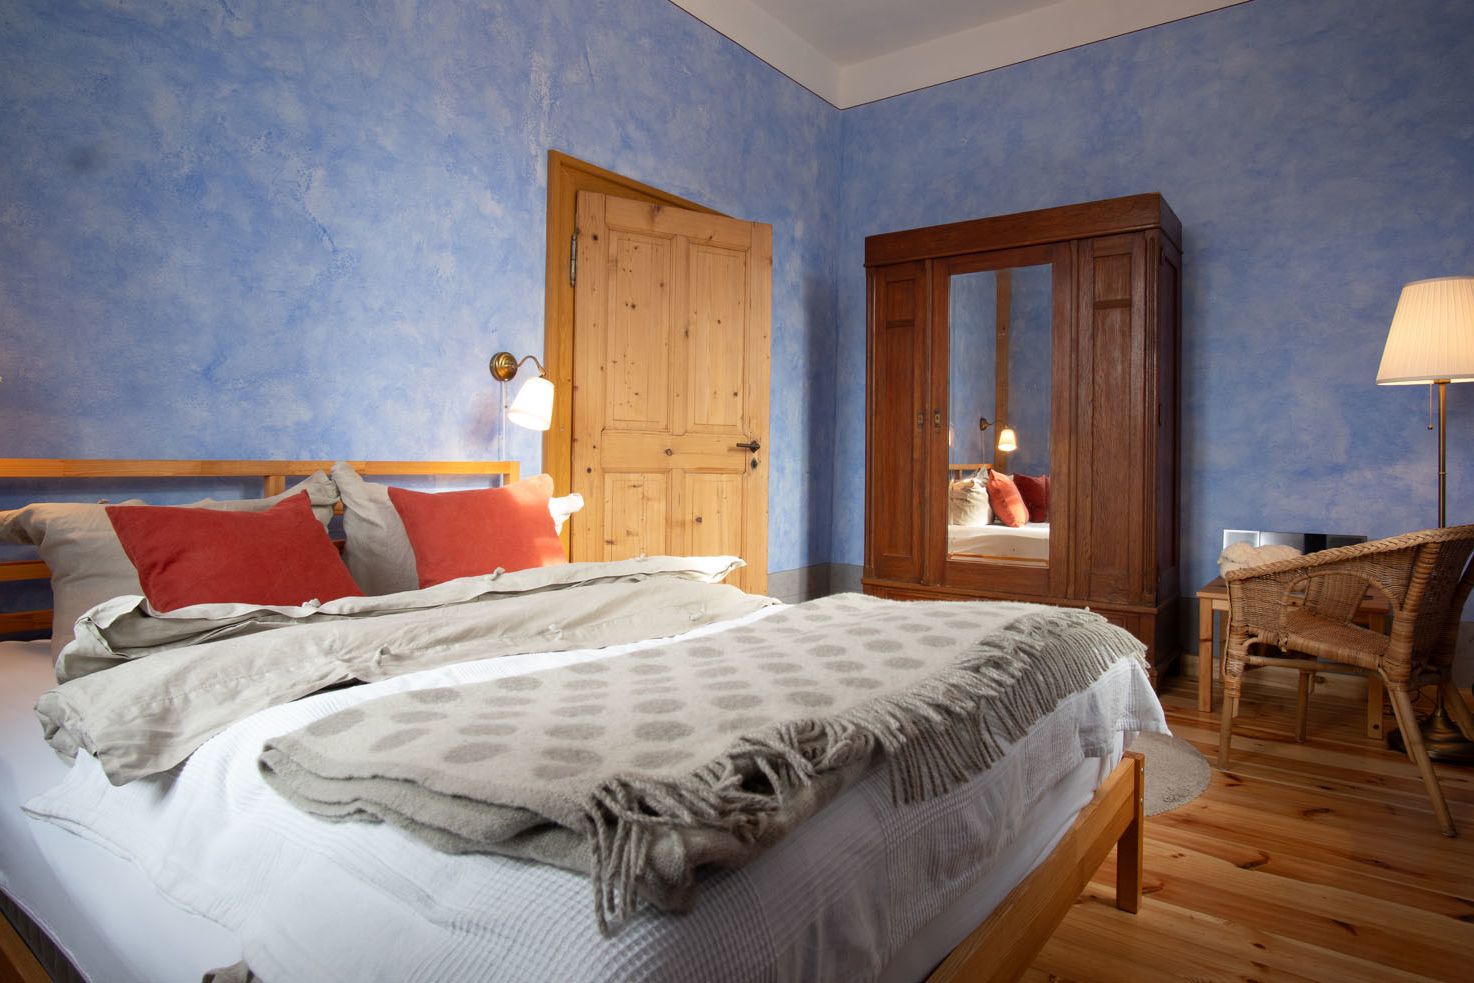 blau gestrichenes Schlafzimmer, Blick aus der Zimmerecke auf Tür und Kleiderschrank mit Spiegel, in dem sich das Bett mit vielen Kissen spiegelt